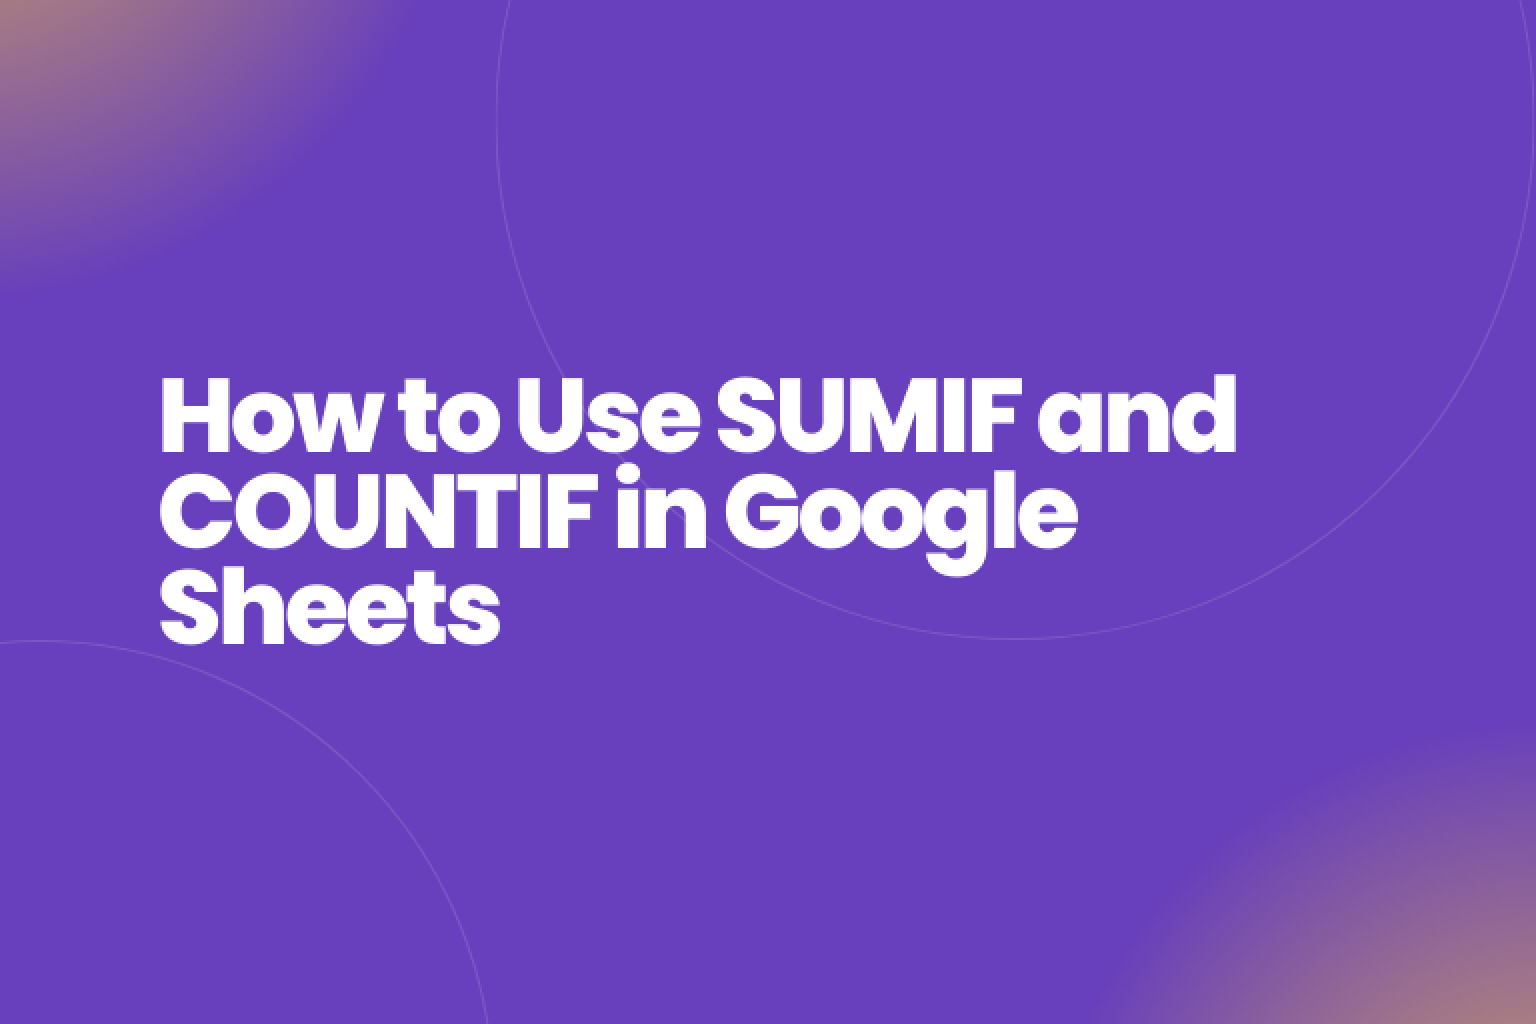 Google スプレッドシートで SUMIF および COUNTIF 関数を使用してデータを分析および要約する方法を学びます。これらの強力な数式を使用して、データ分析のスキルを向上させます。